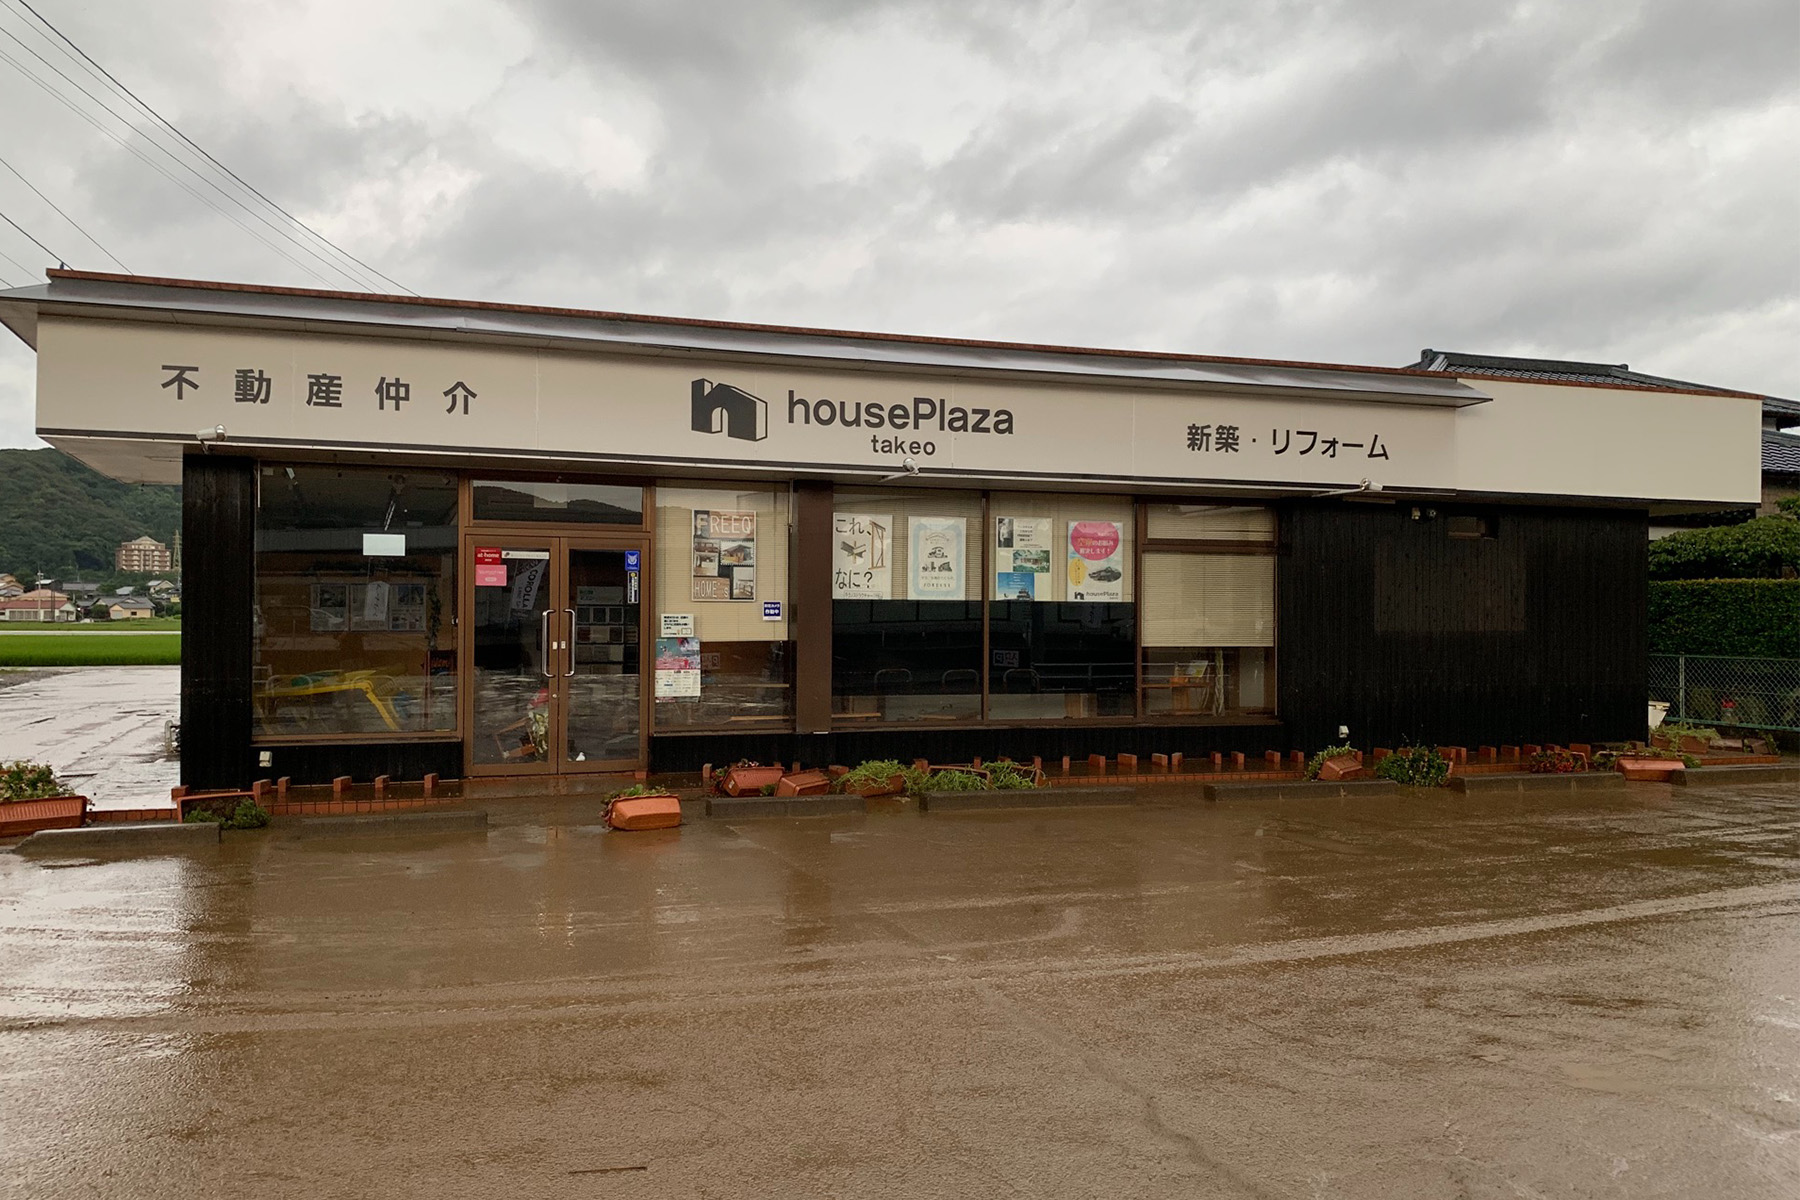 8.28大雨の被害を受けた朝日I&Rリアルティ武雄支店